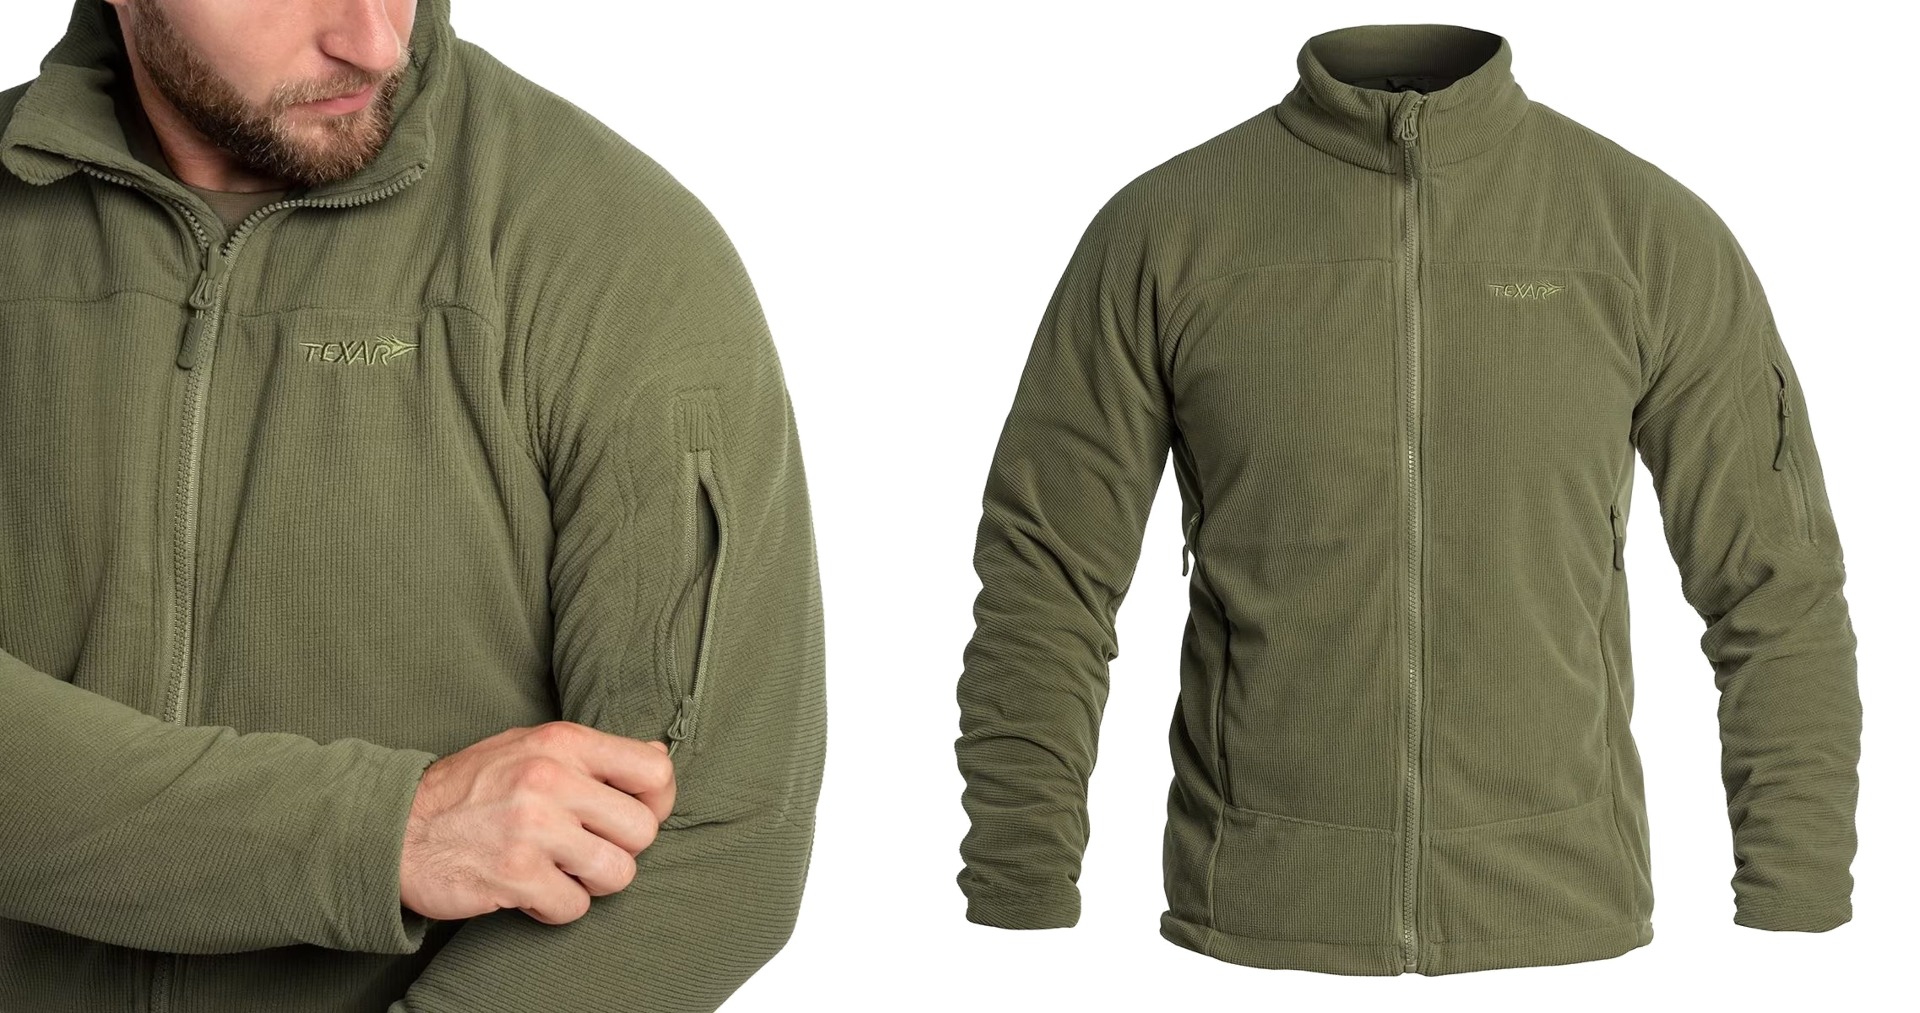 Odkrijte vrhunsko flis jakno Texar Conger Oliv - idealno taktično oblačilo za zaščito in udobje v vseh vremenskih razmerah. Vzdržljiva, funkcionalna in kakovostna jakna za pripadnike varnostnih služb, pohodnike in rekreativce. Zagotovite si svoj primerek že danes!